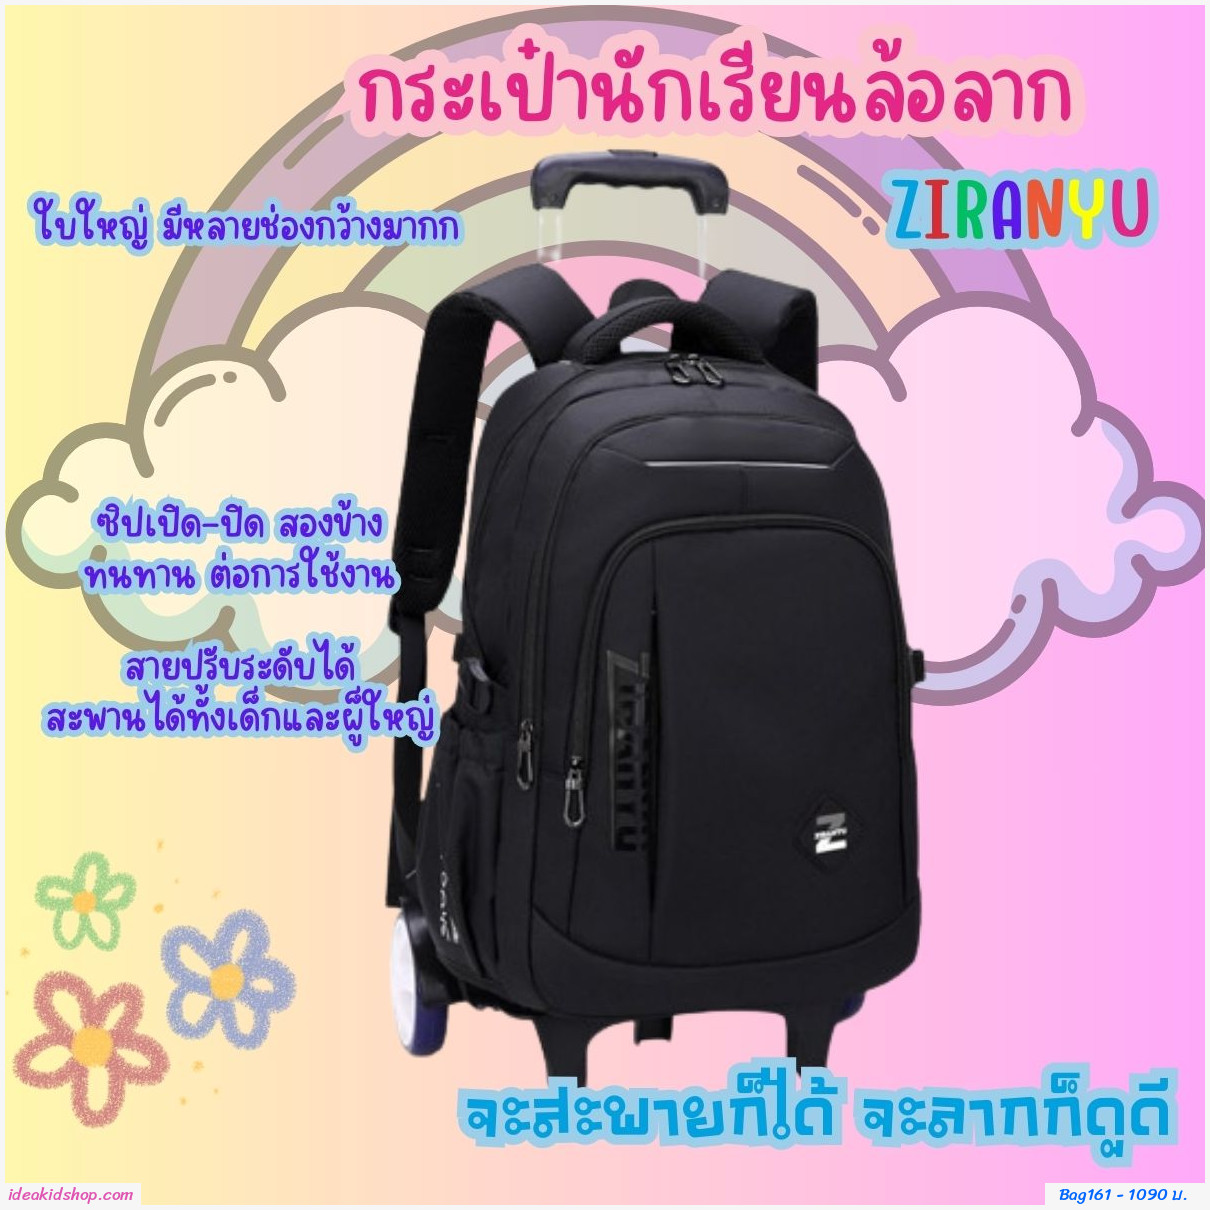 กระเป๋านักเรียนล้อลาก ZIRANYU สีดำ แบบ2ล้อ Bigwheel